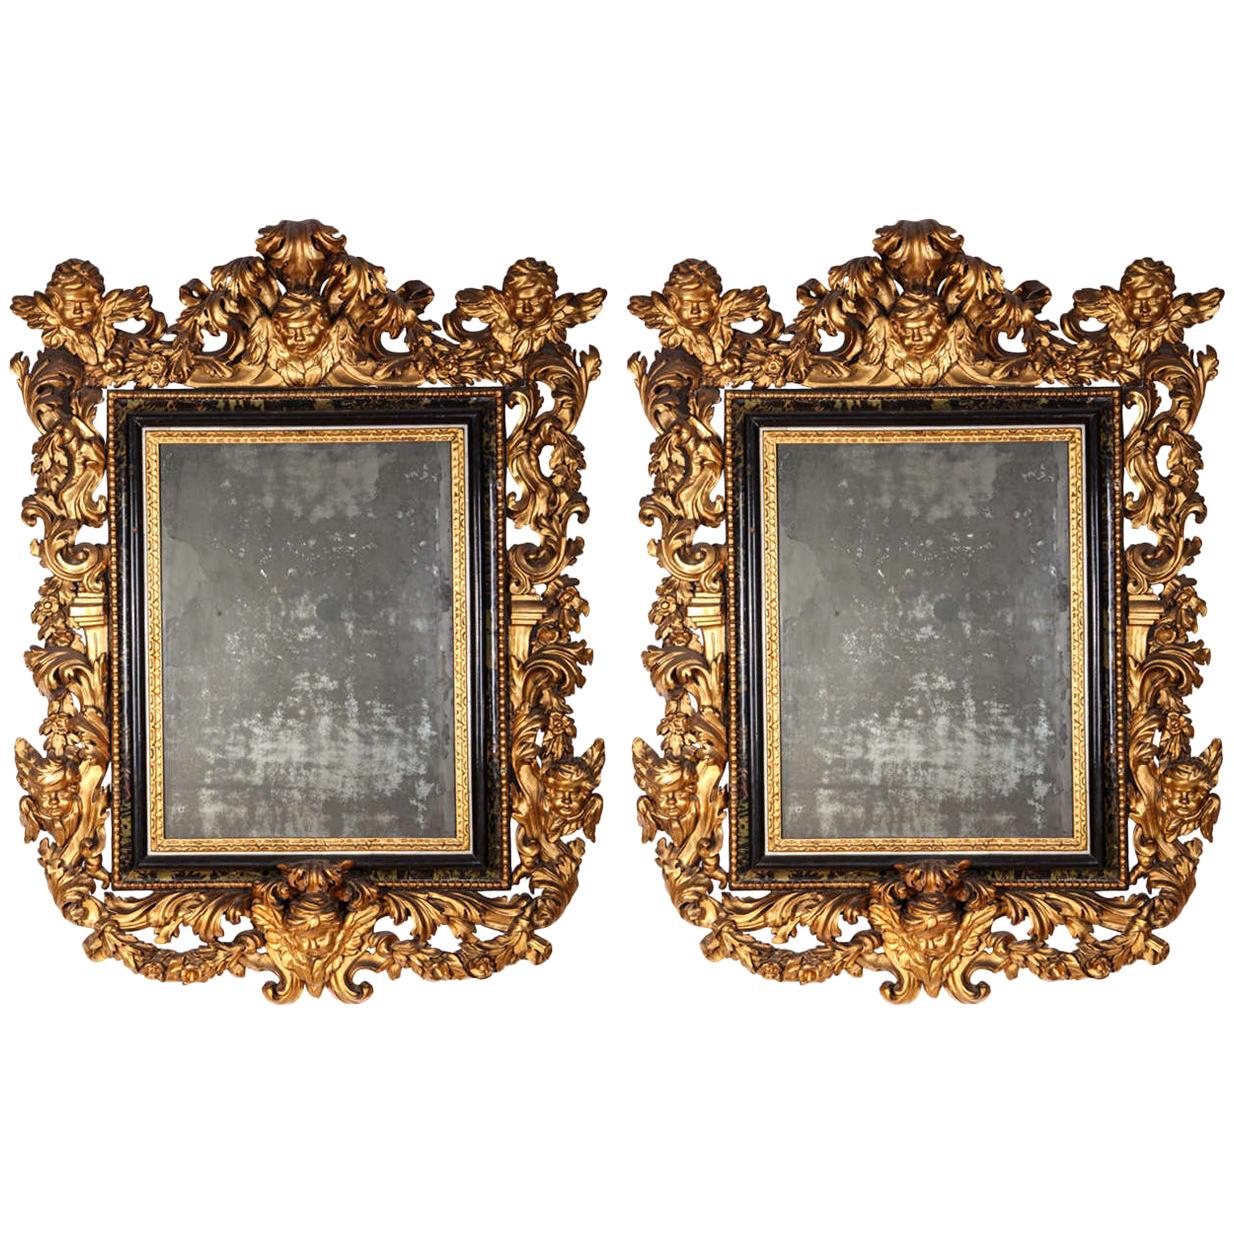 Paire de rares miroirs baroques italiens du 17e siècle en bois doré, 1680